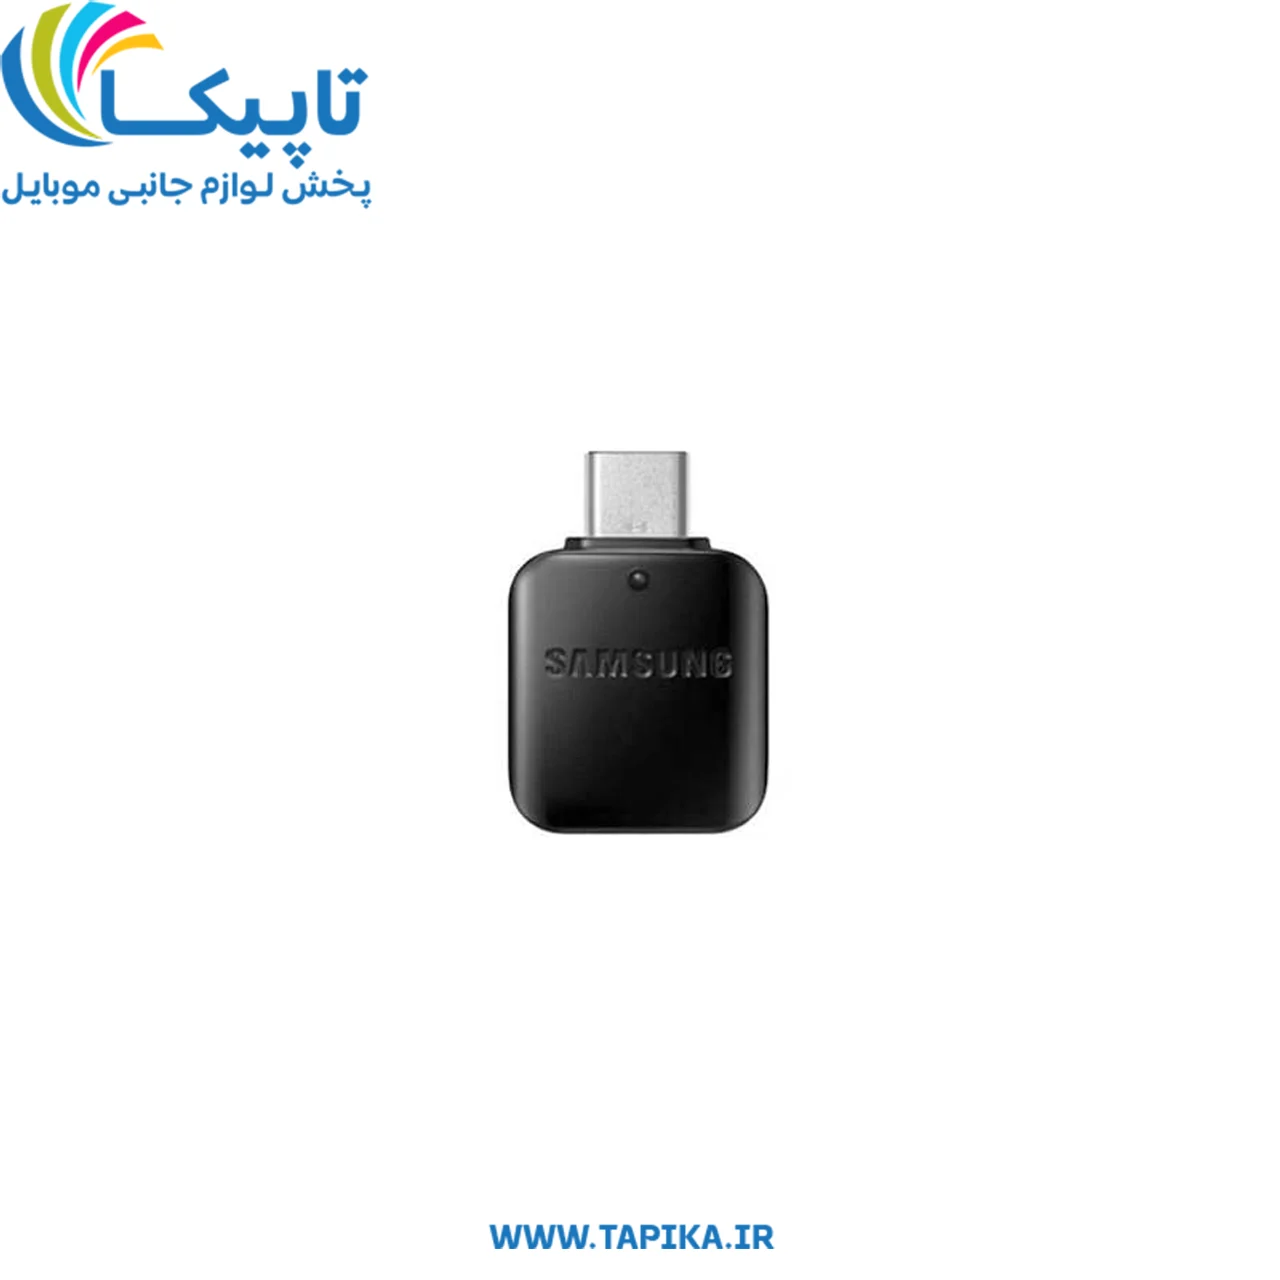 تبدیل او تی جی تایپ سی به یو اس بی Samsung USB Type-C to USB OTG Connector